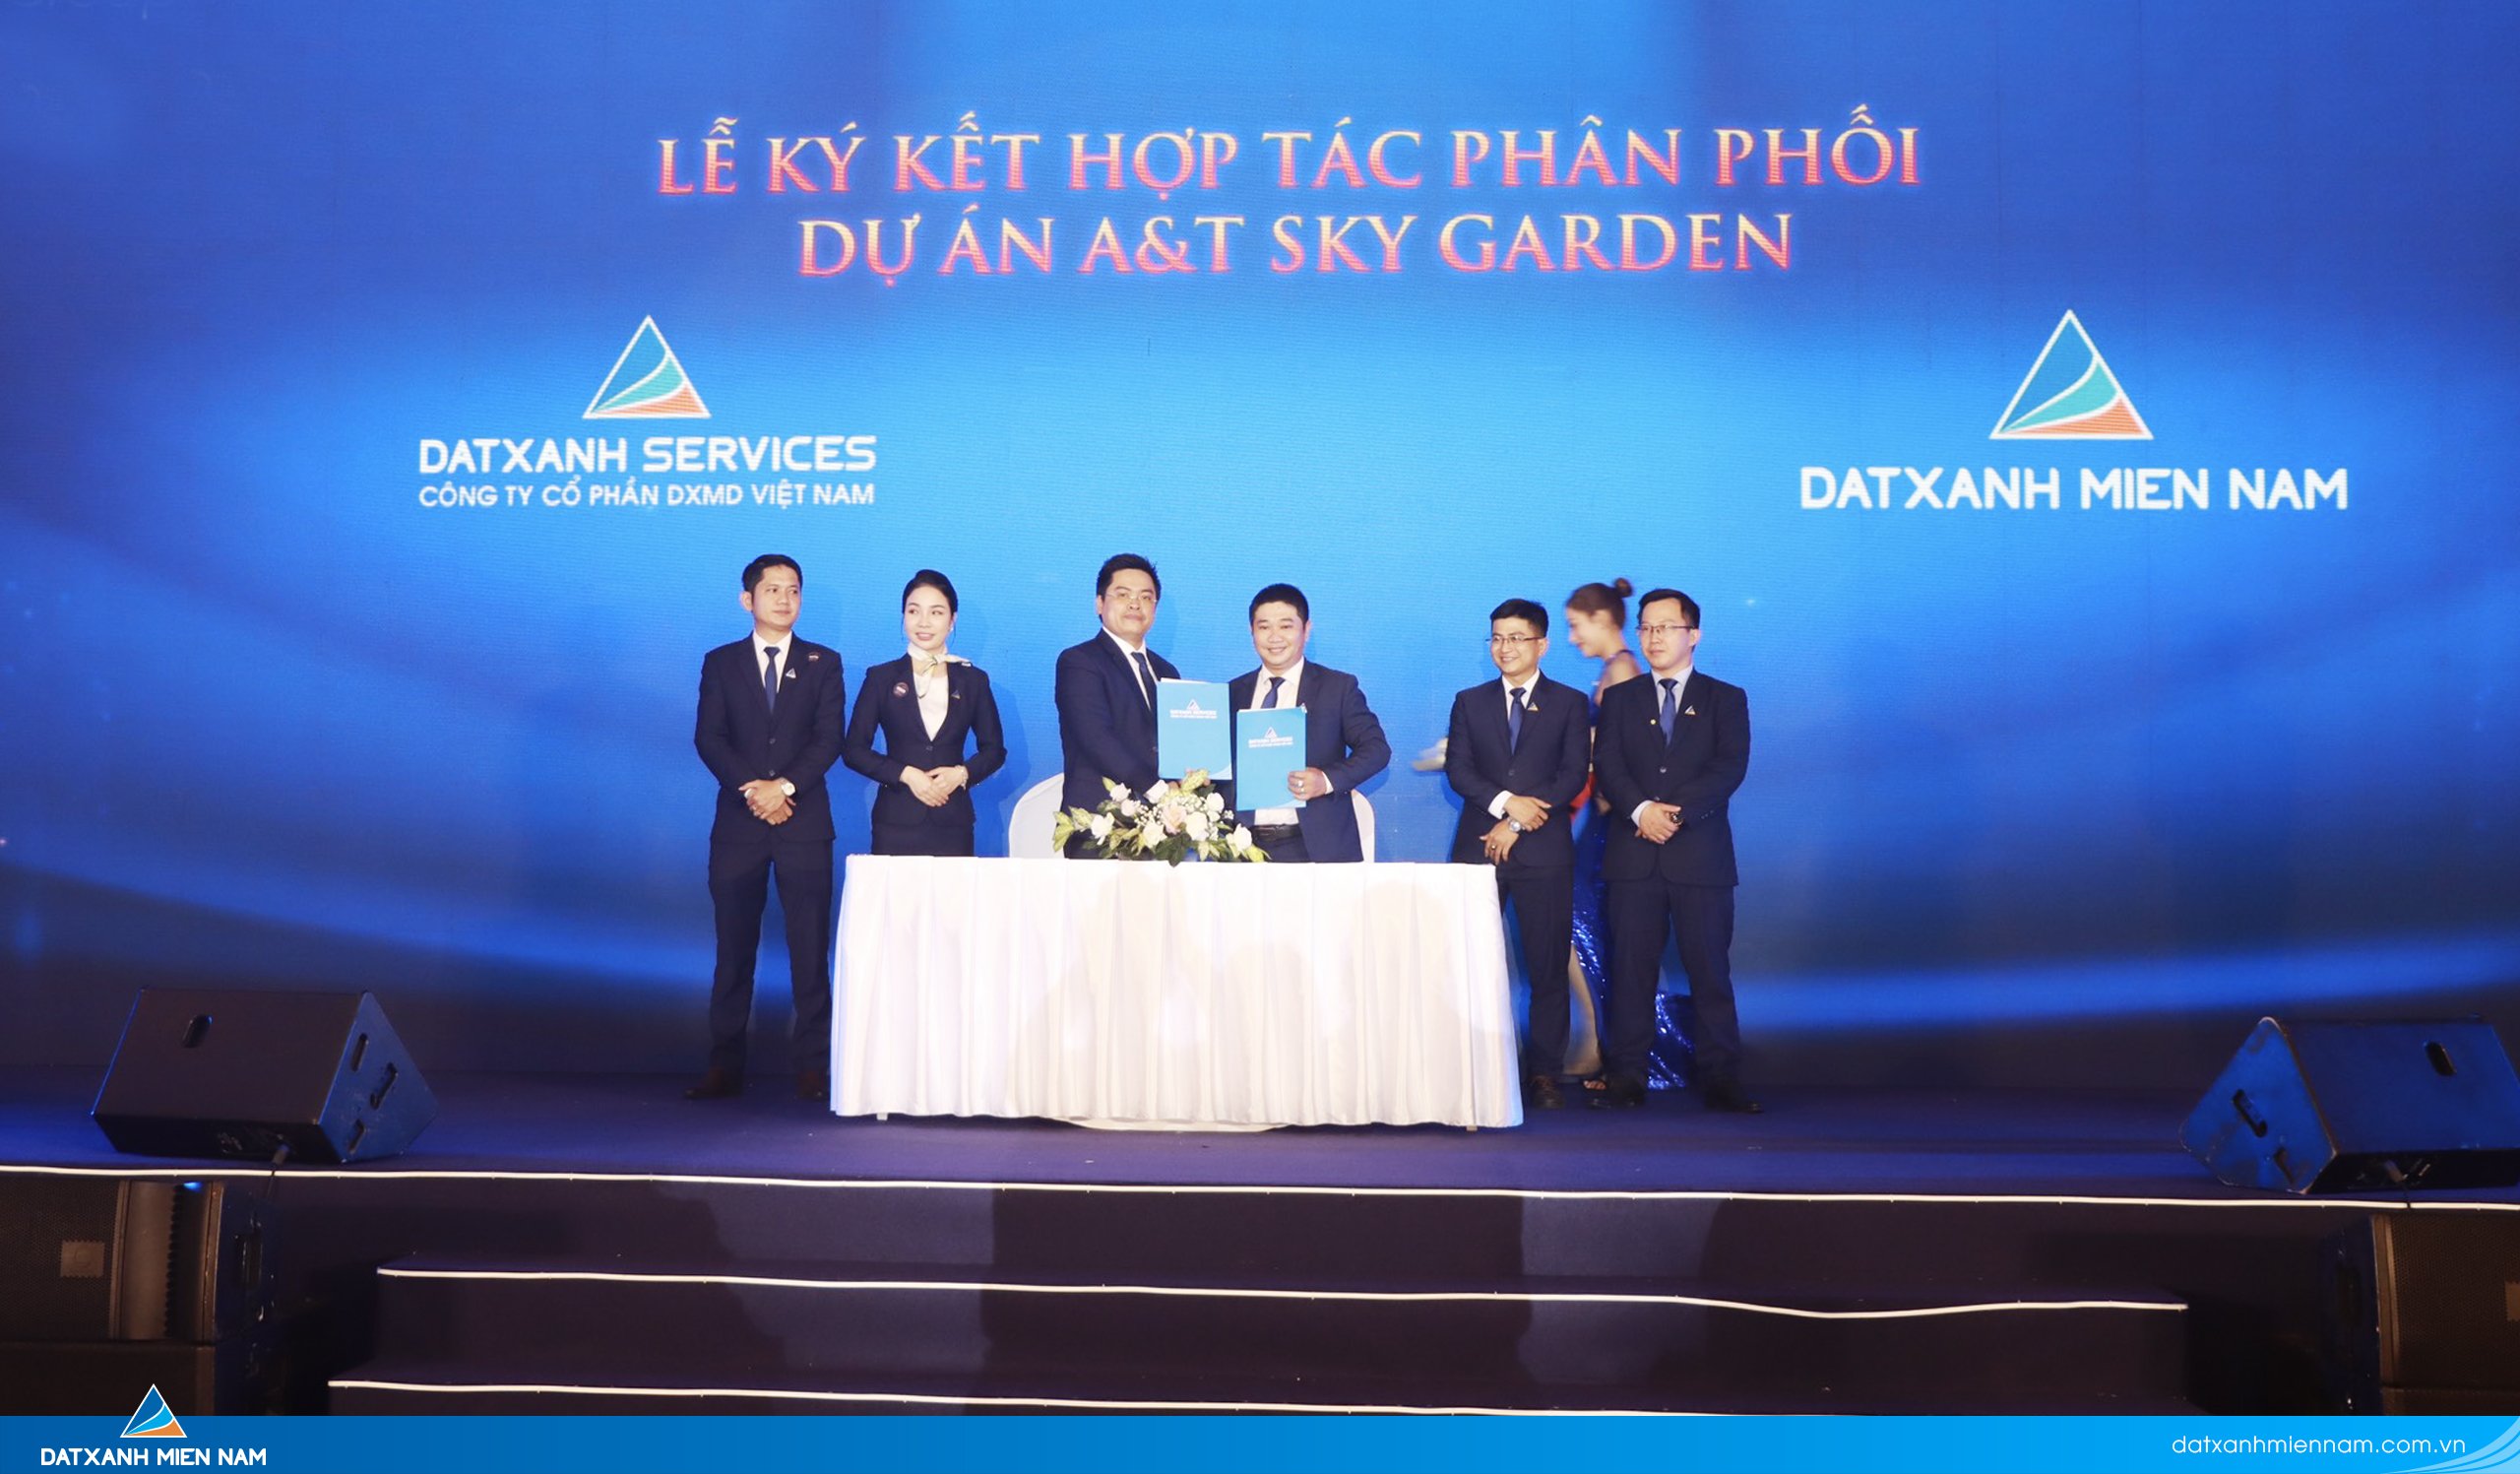 Đất Xanh Miền Nam chính thức là đối tác phân phối dự án A&T SKY GARDEN